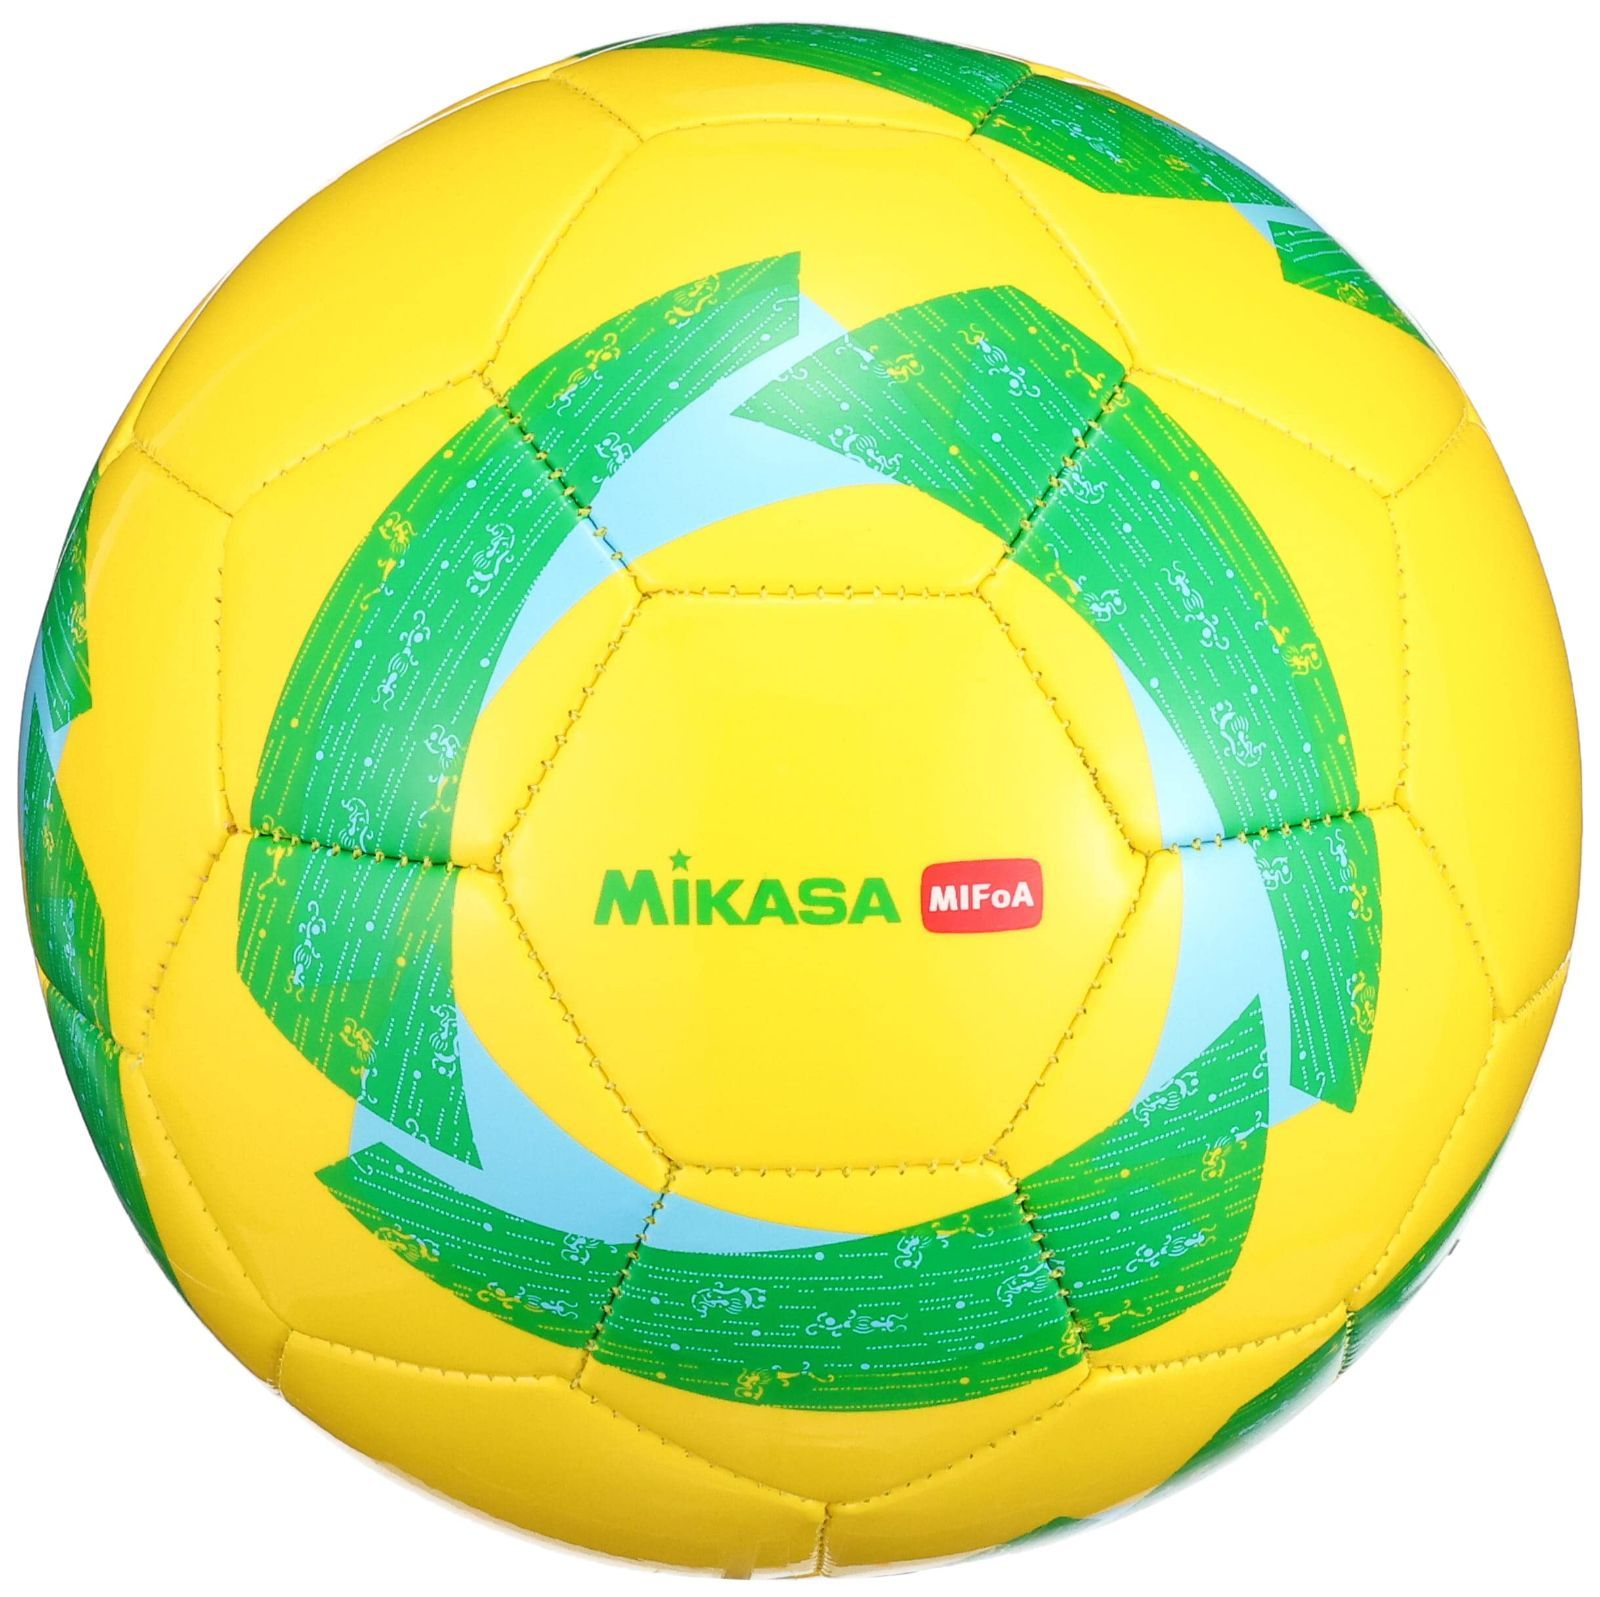 ミカサ(MIKASA) サッカーボール 4号球 MIFoA 小学生用 F4AZ